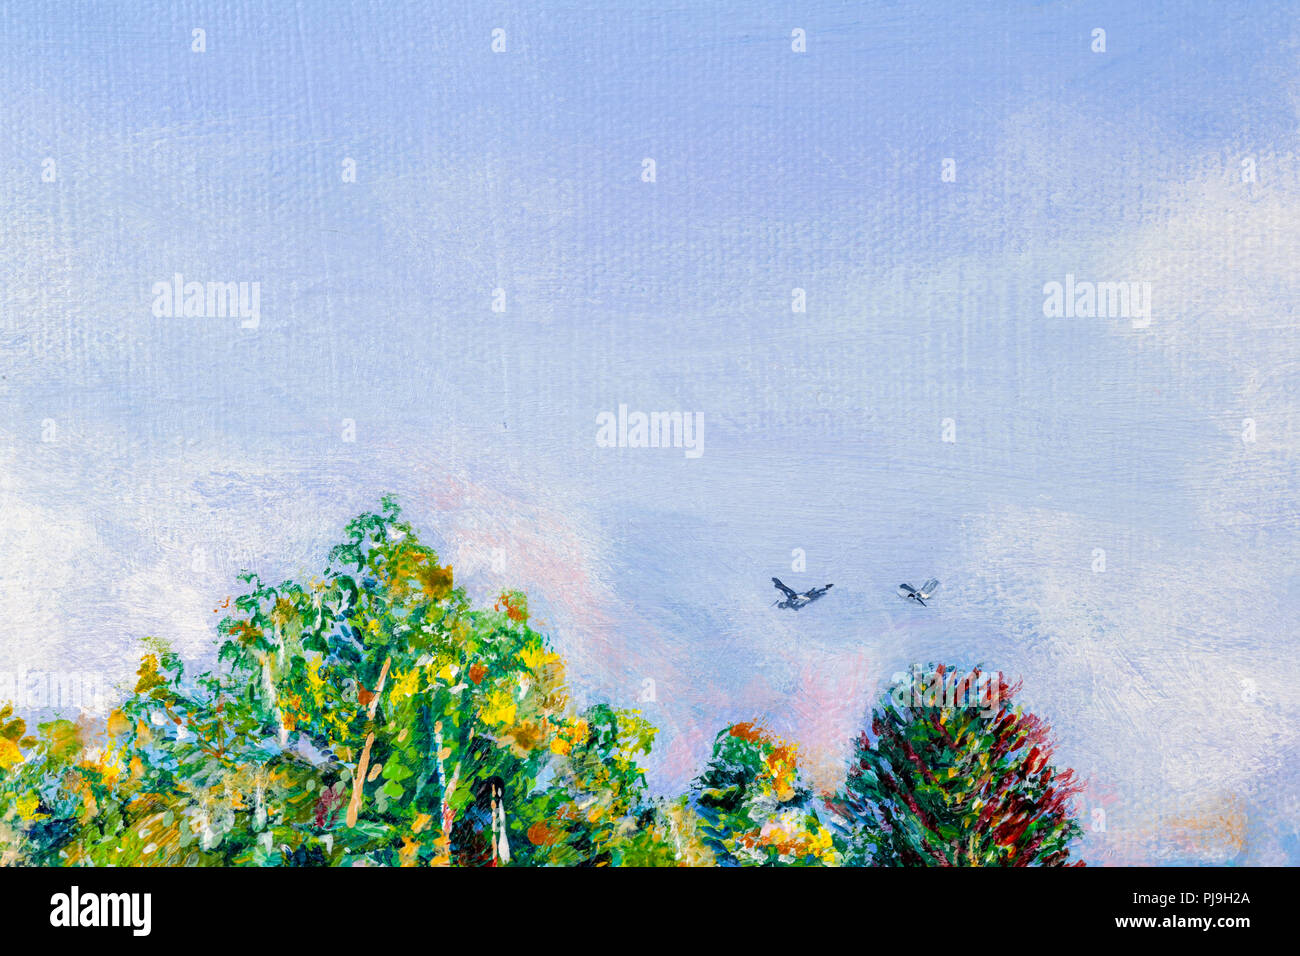 Dettagli di dipinti acrilico che mostra colore, texture e tecniche. Treetops con due uccelli in volo in un cielo blu. Foto Stock